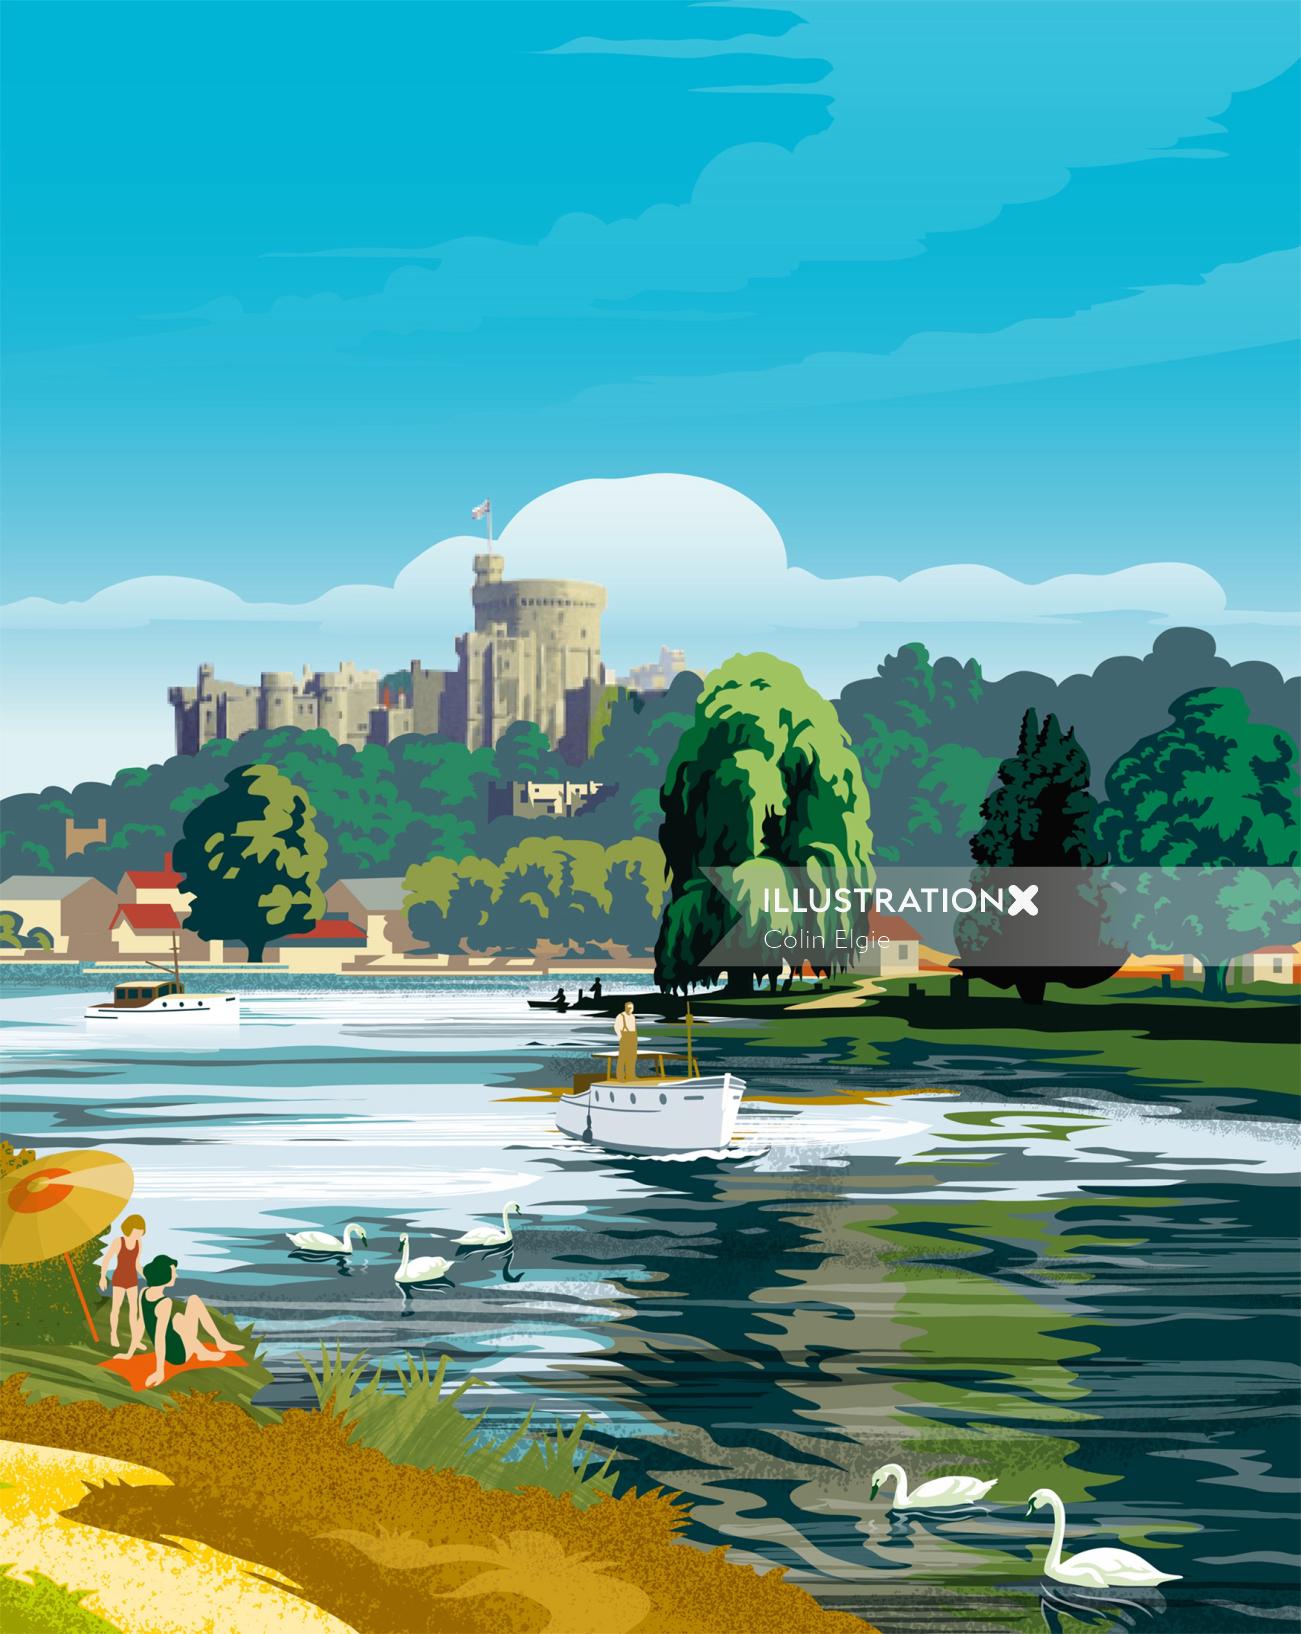 River Thames scene at Windsor Castle